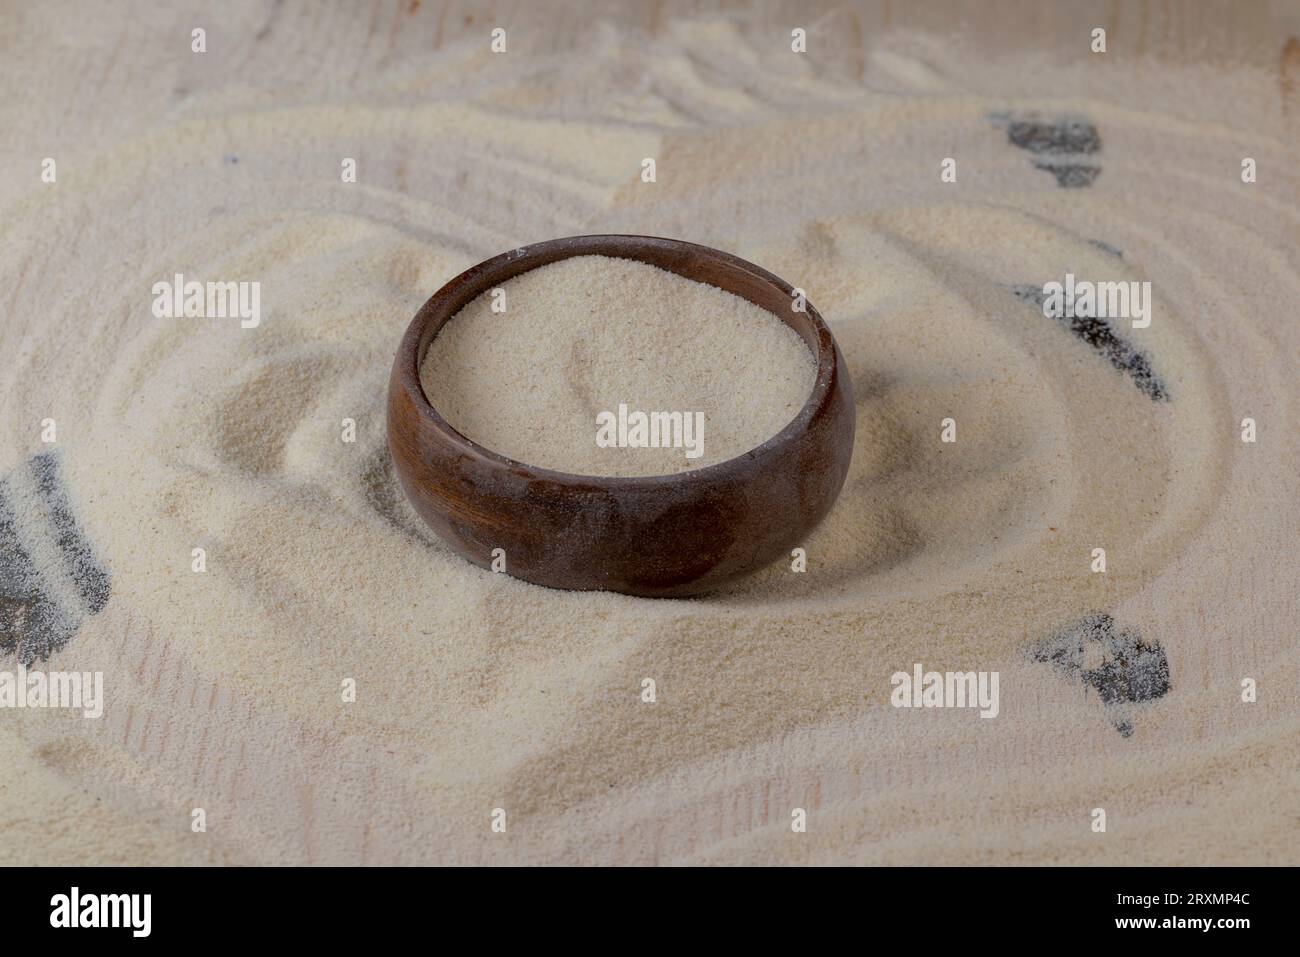 Grieß in eine runde Holzschüssel gegossen, fertig zum Kochen, einfacher Grieß mittlerer Qualität in einer Holzschüssel Stockfoto